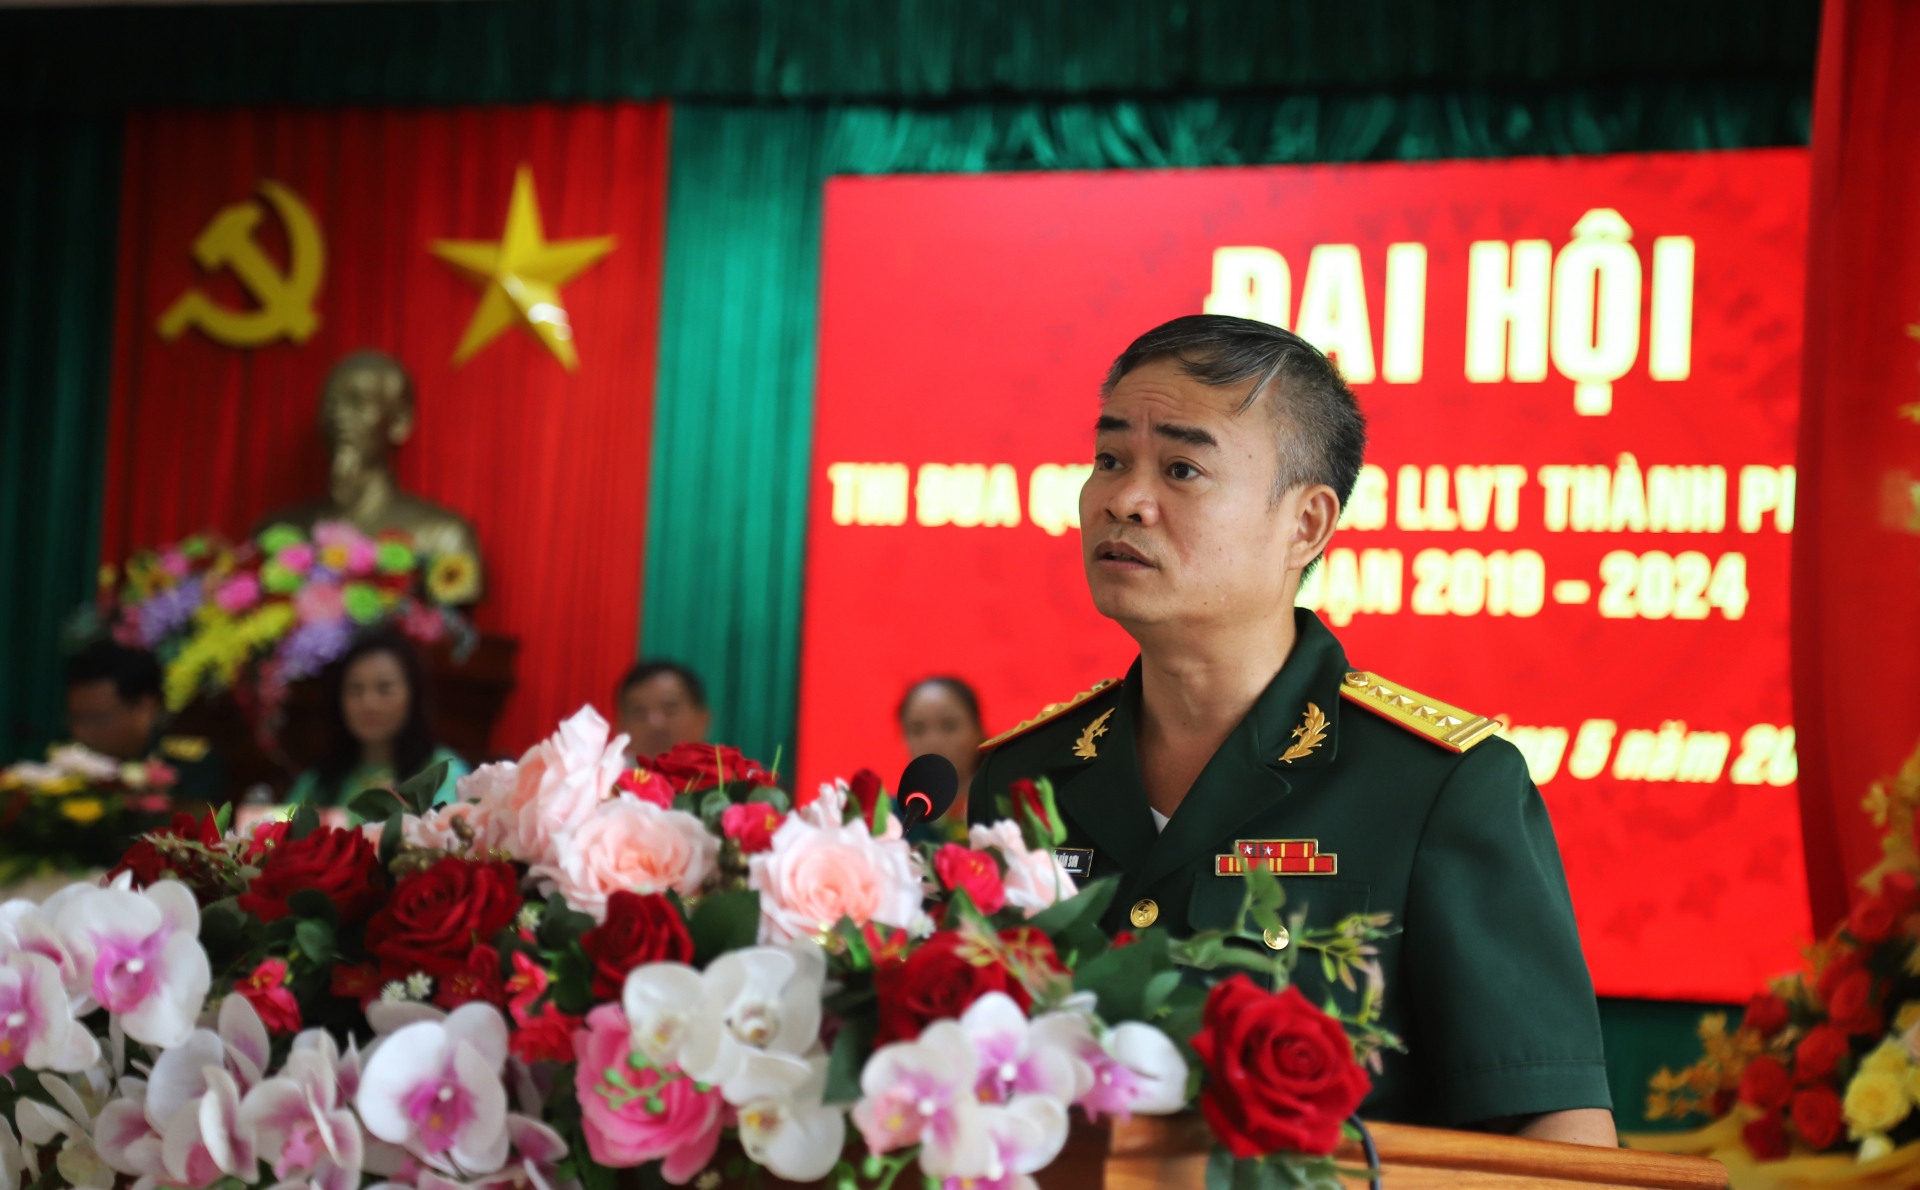 Đại tá Nguyễn Văn Sơn - Chính ủy Bộ CHQS tỉnh Lâm Đồng phát biểu chỉ đạo tại Đại hội